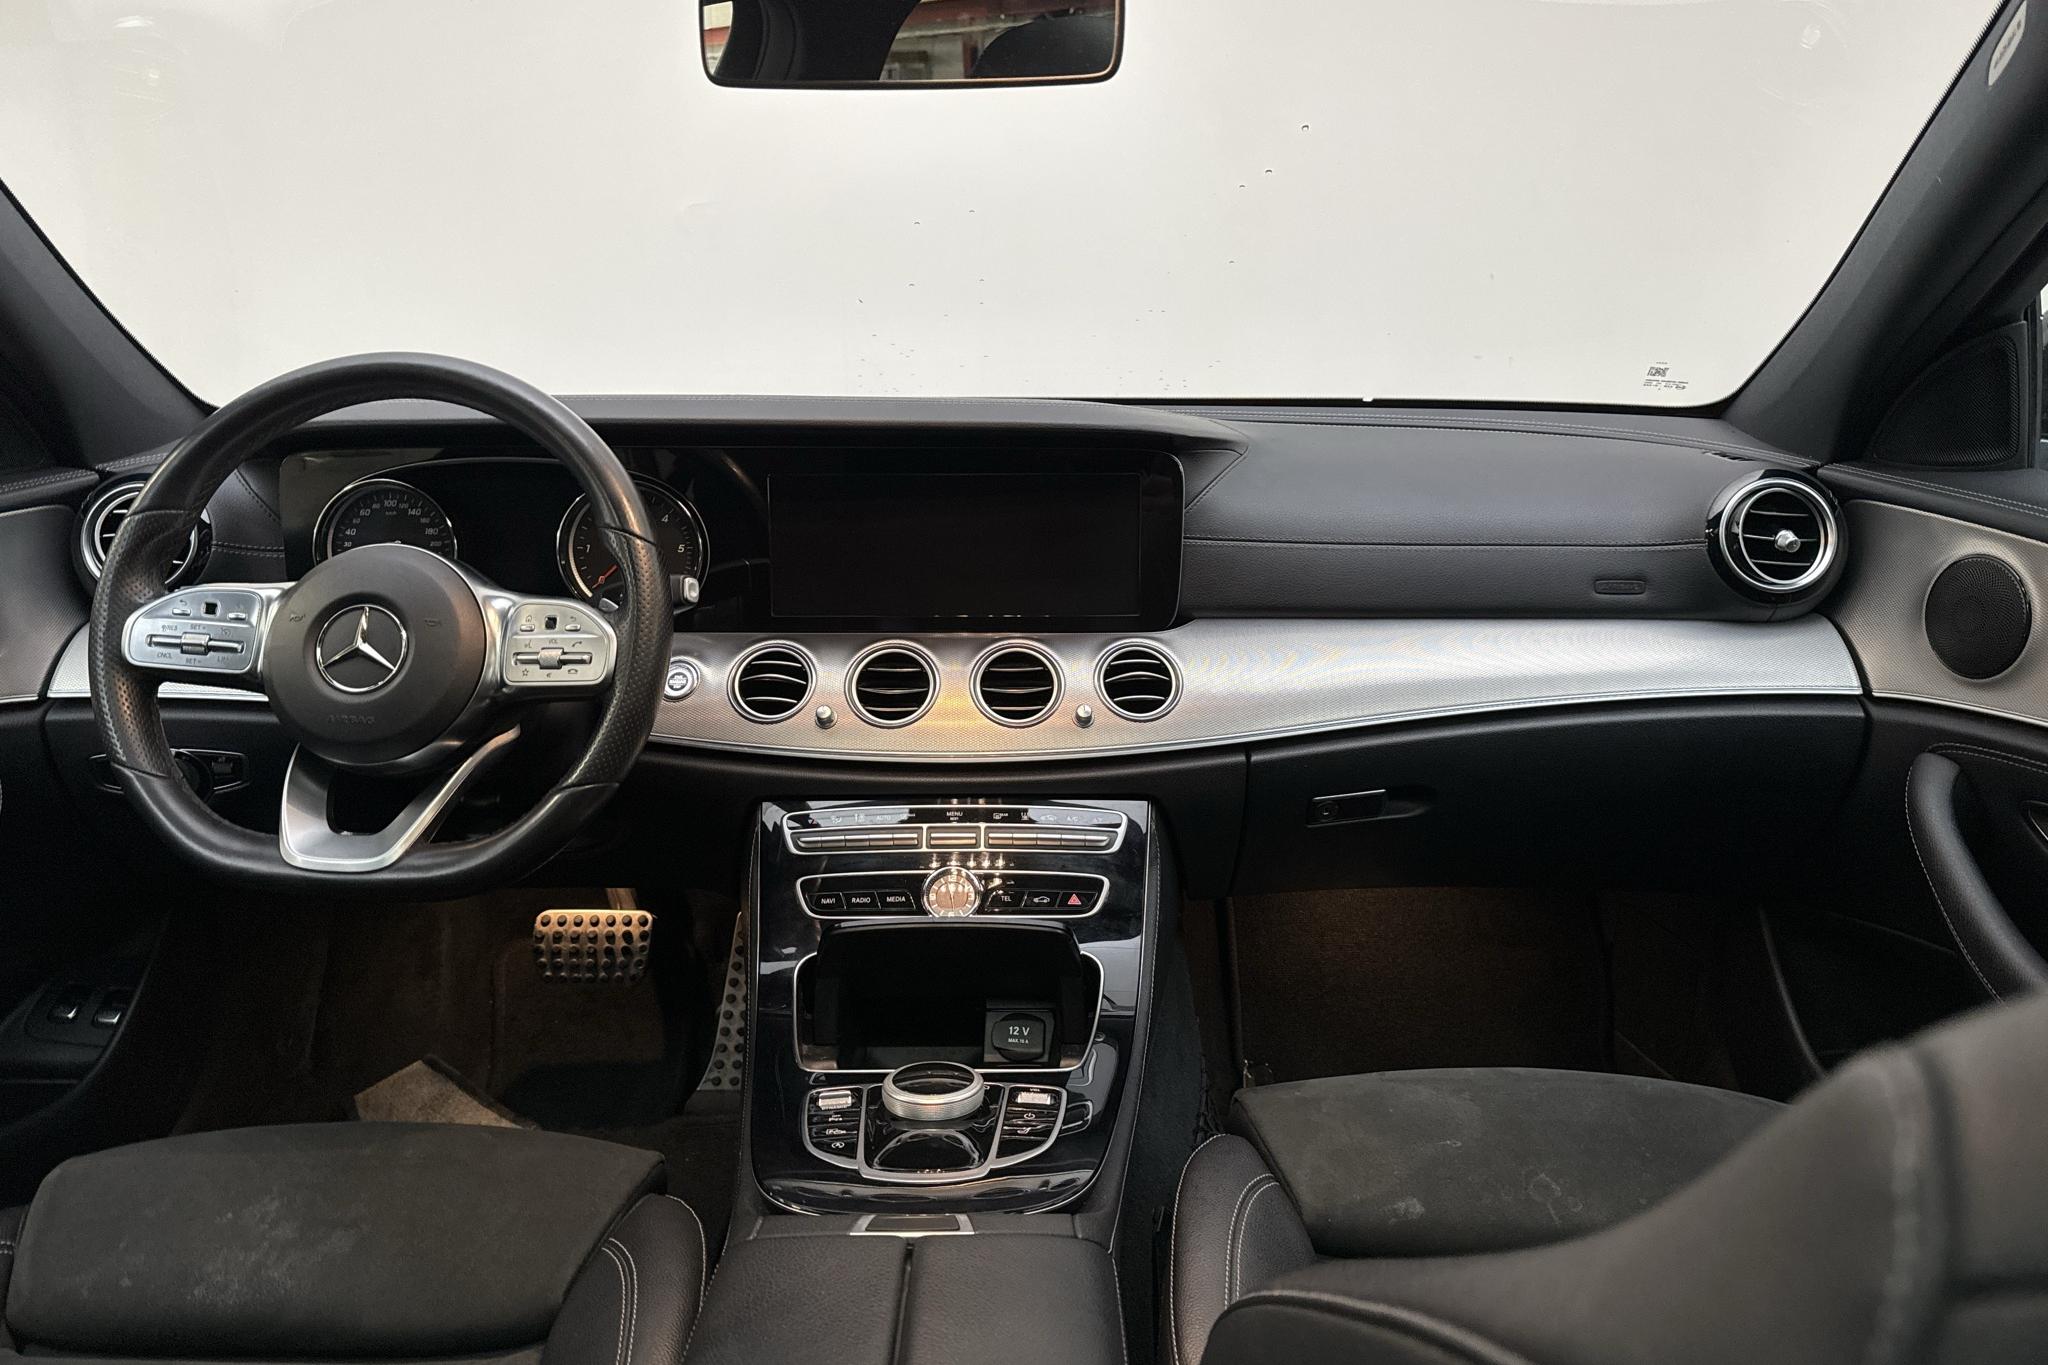 Mercedes E 220 d 4MATIC Kombi S213 (194hk) - 216 050 km - Automaattinen - valkoinen - 2019